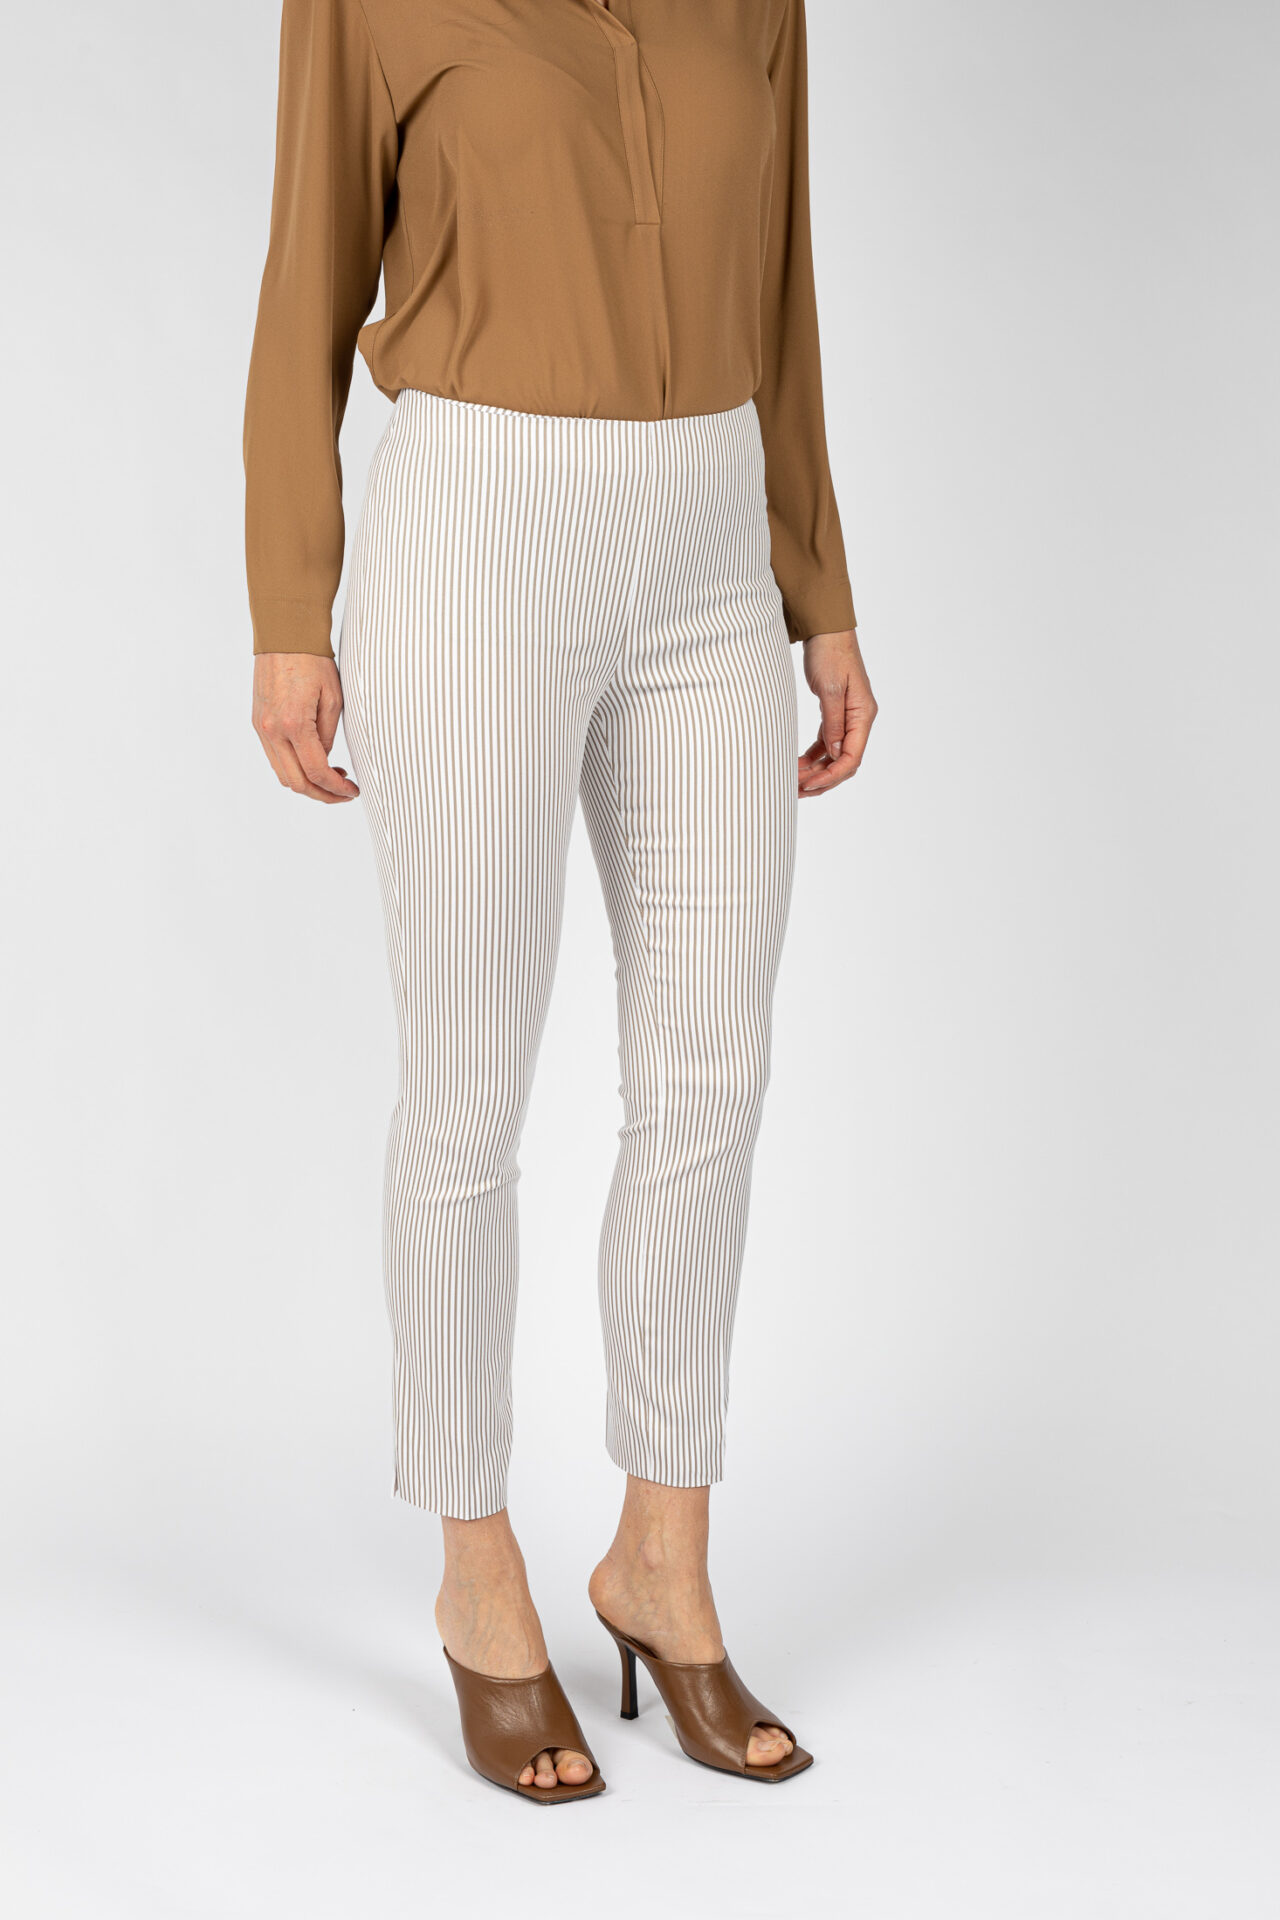 Pantaloni a riga colore beige da donna linea stretta - P19614E BEIGE - 2